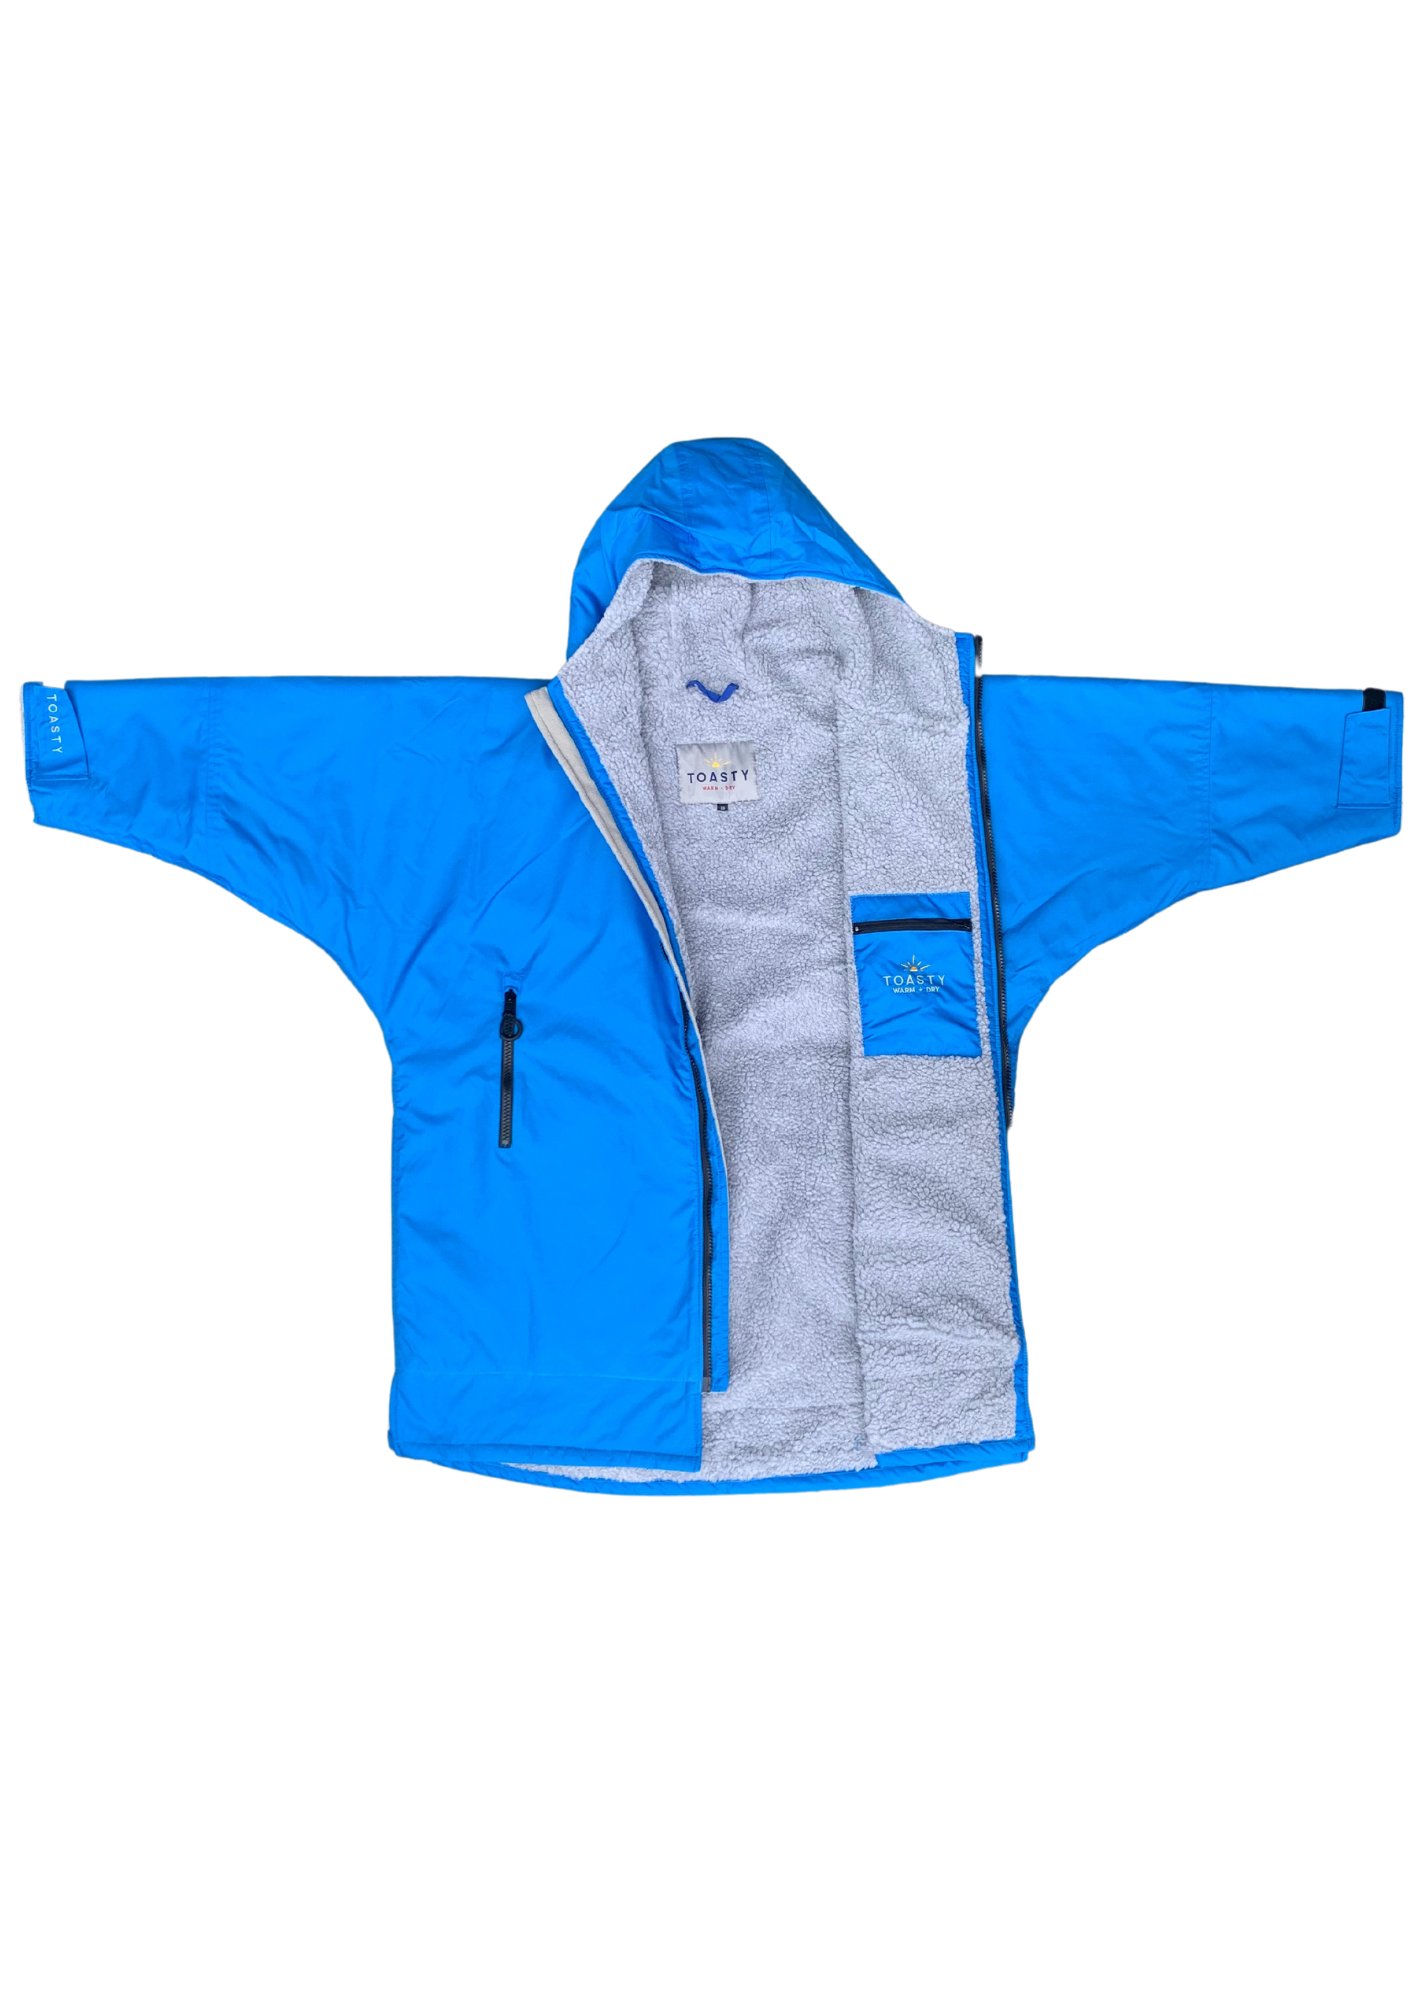 Toasty  Kids Ultimate weatherproof change jacket in aqua blue open zip